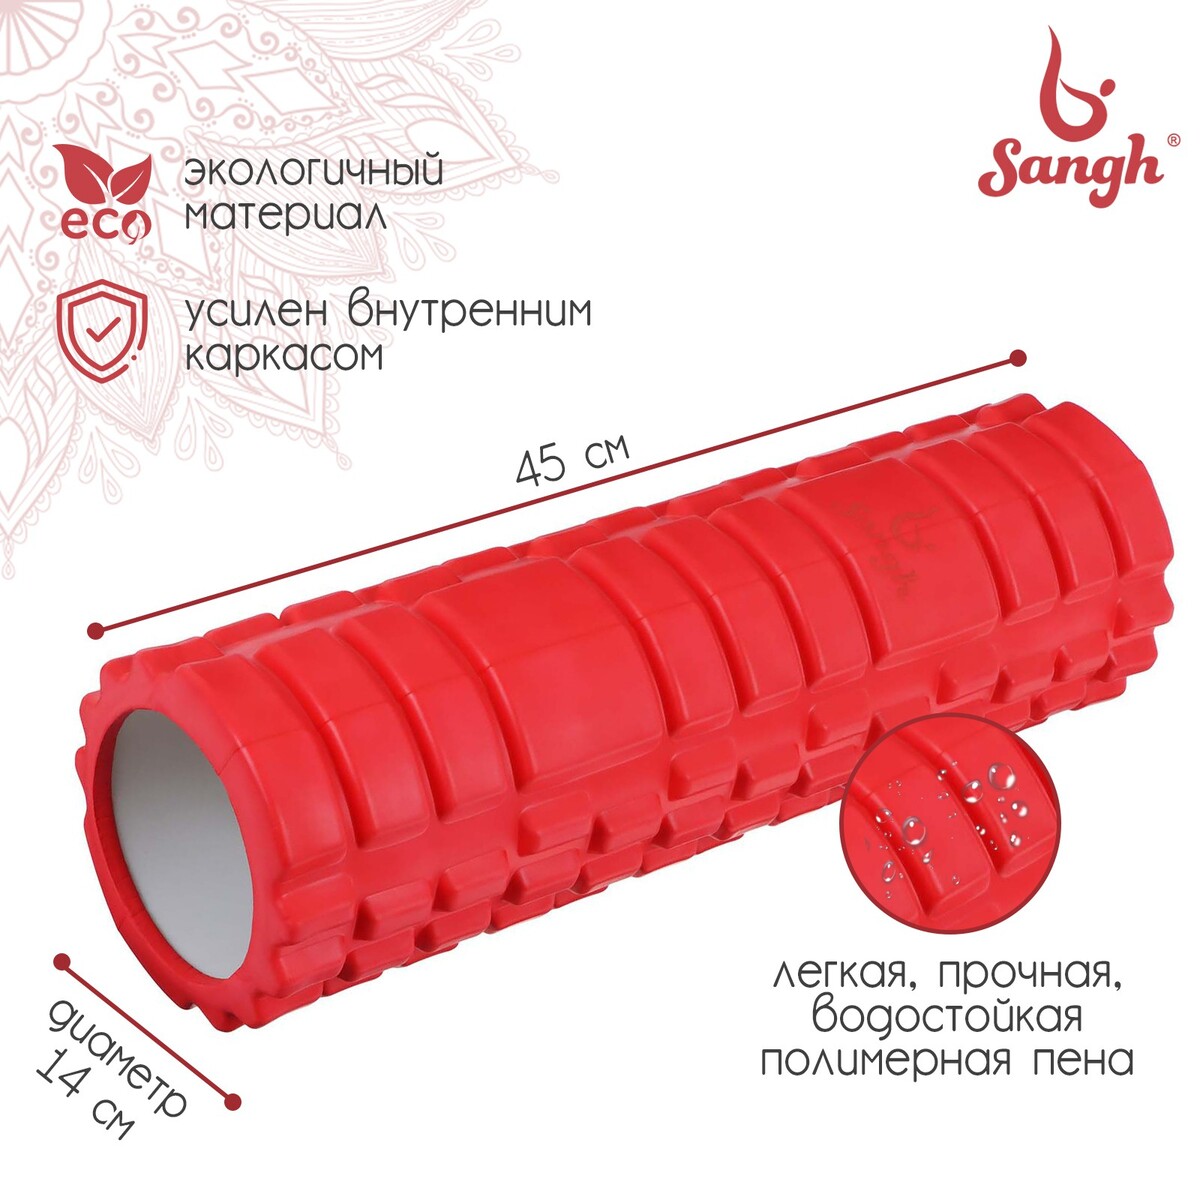 Ролик массажный sangh, 45х14, цвет красный ролик массажный средняя жесткость pro 32 5x12 5 cм star fit fa 507 мятный серый